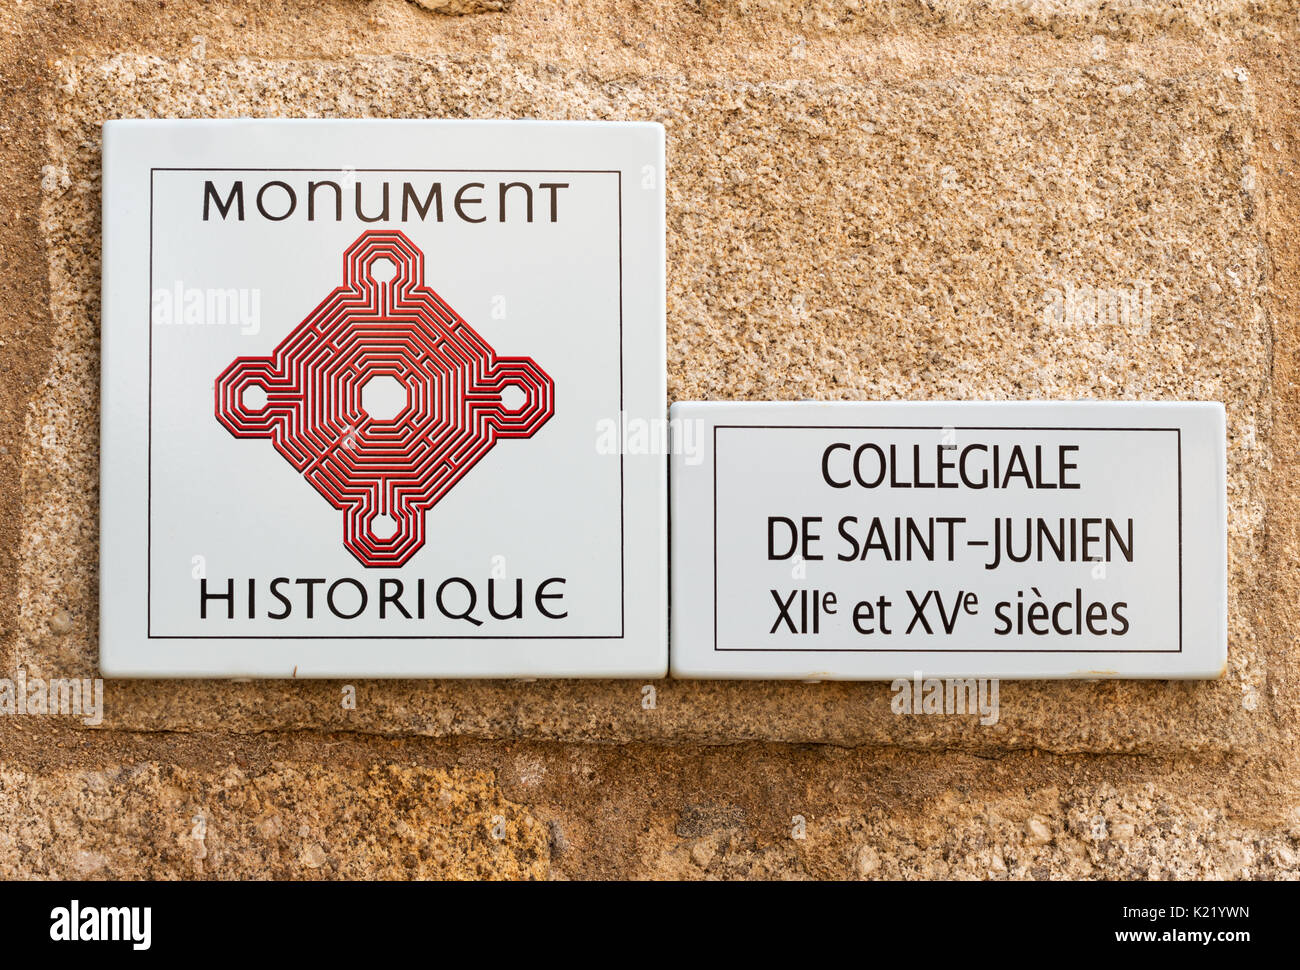 Sign, monument historique, Collégiale de Saint-Junien, Saint-Junien, Nouvelle-Aquitaine, France, Europe Stock Photo